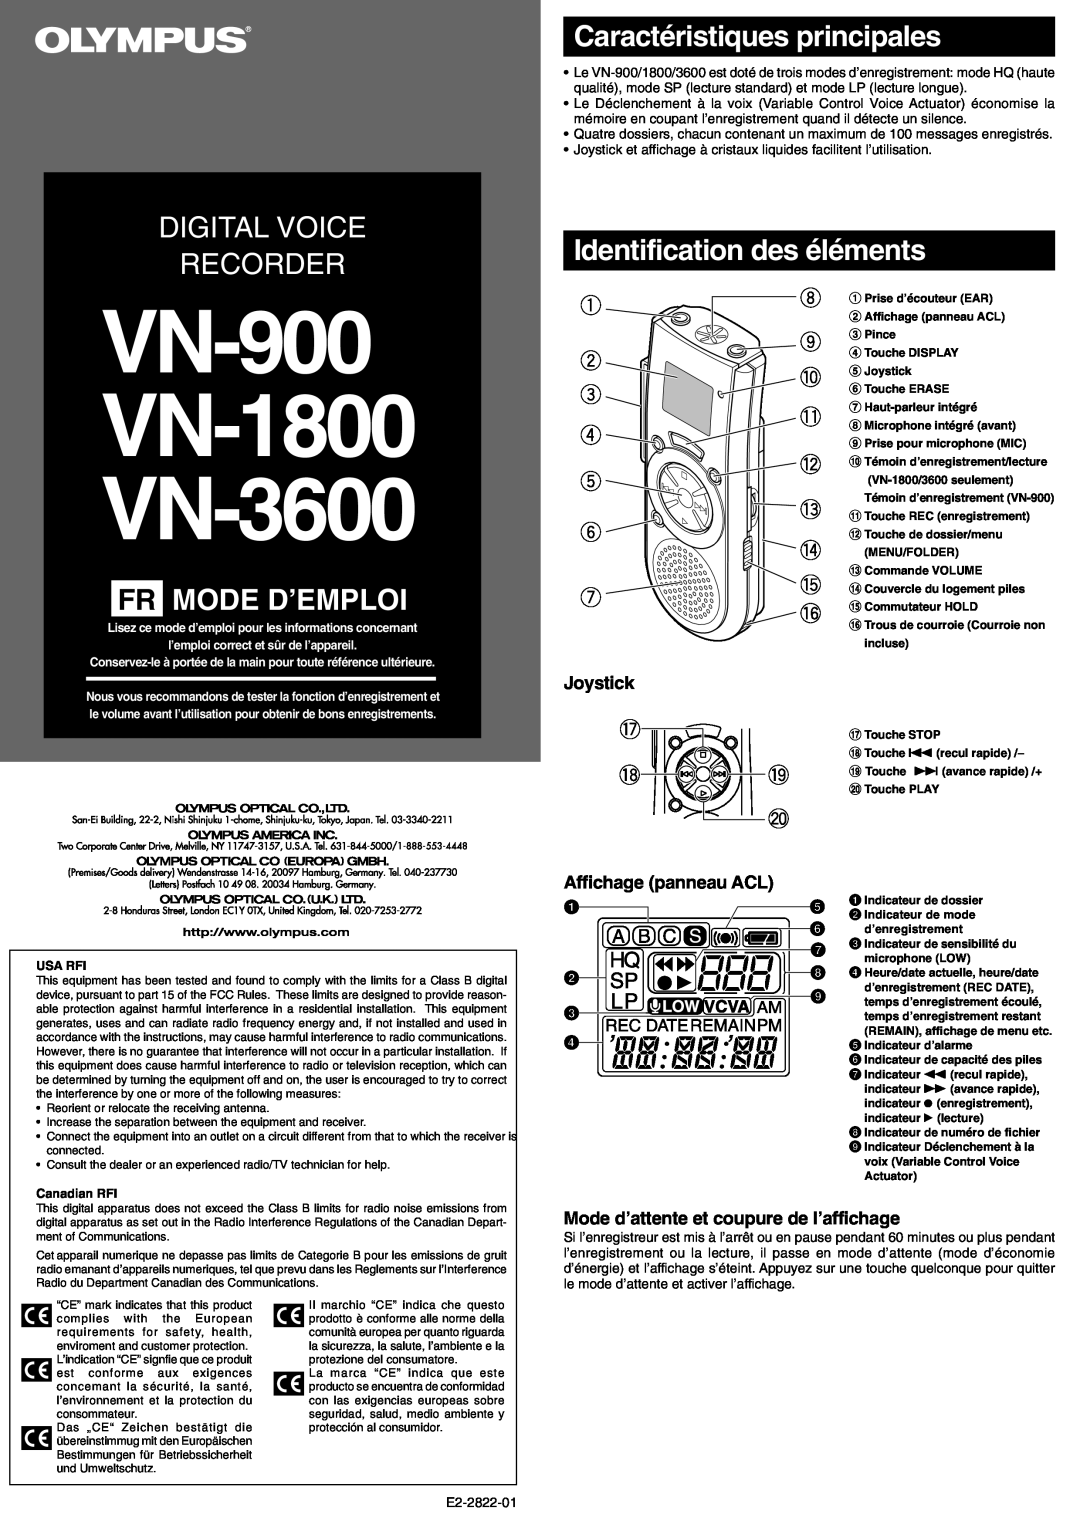 Olympus VN-3600, VN-900 manual Fr Mode D’Emploi, Caractéristiques principales, Identification des éléments, Joystick 